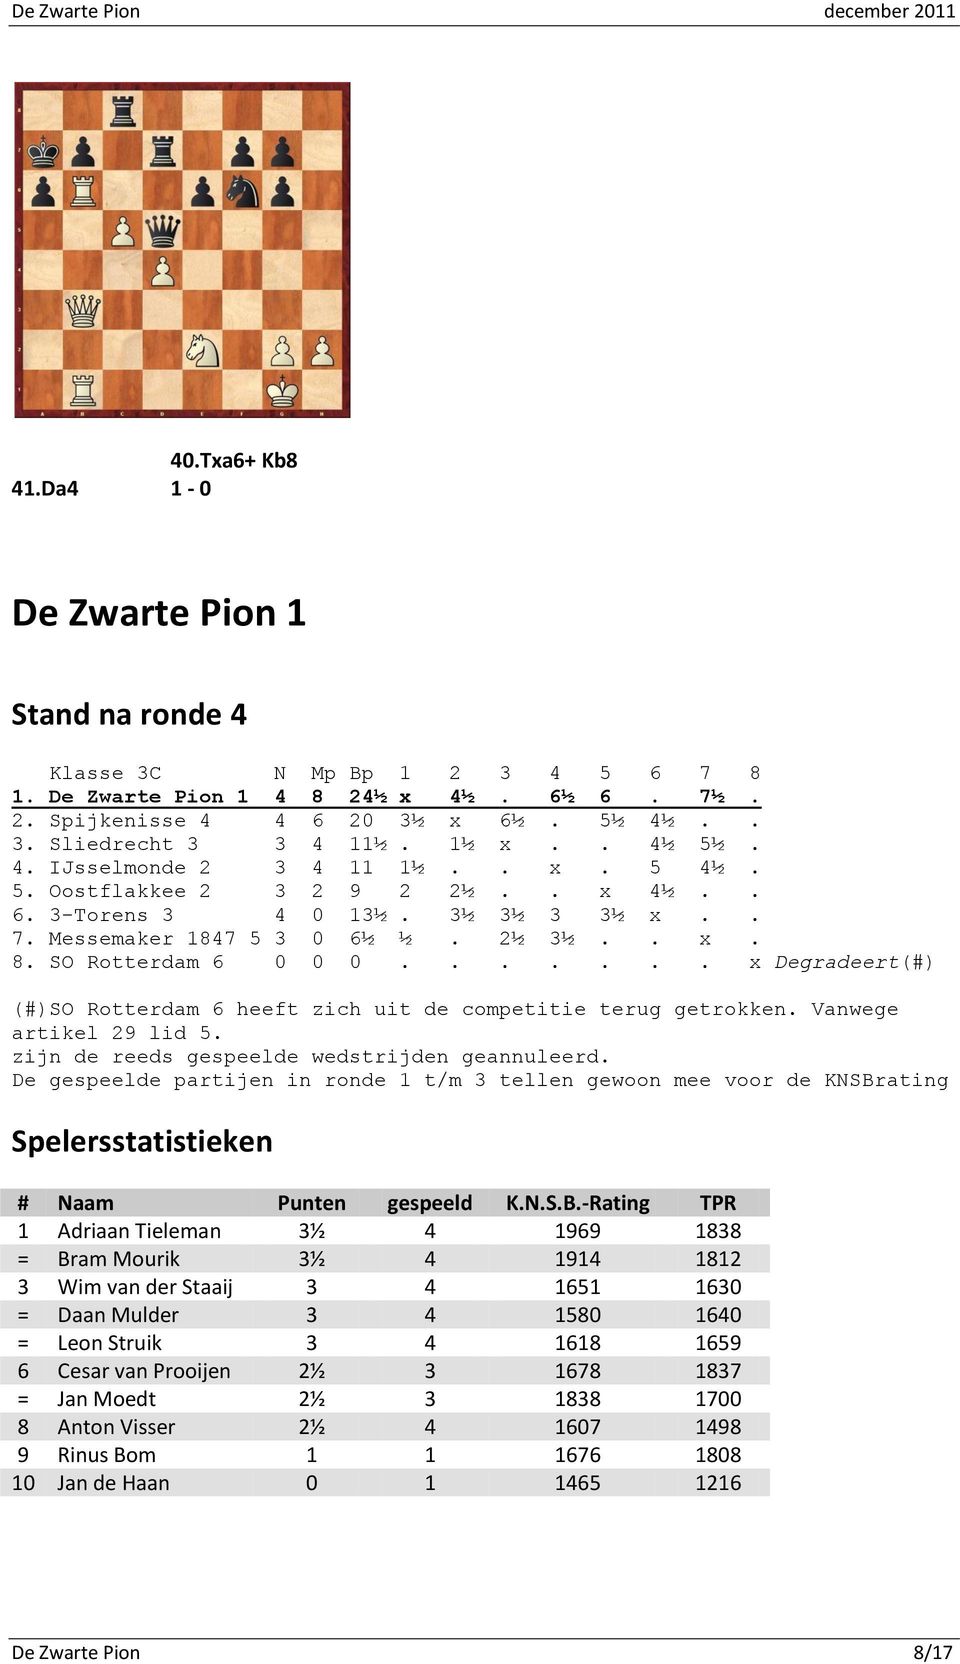 ...... x Degradeert(#) (#)SO Rotterdam 6 heeft zich uit de competitie terug getrokken. Vanwege artikel 29 lid 5. zijn de reeds gespeelde wedstrijden geannuleerd.